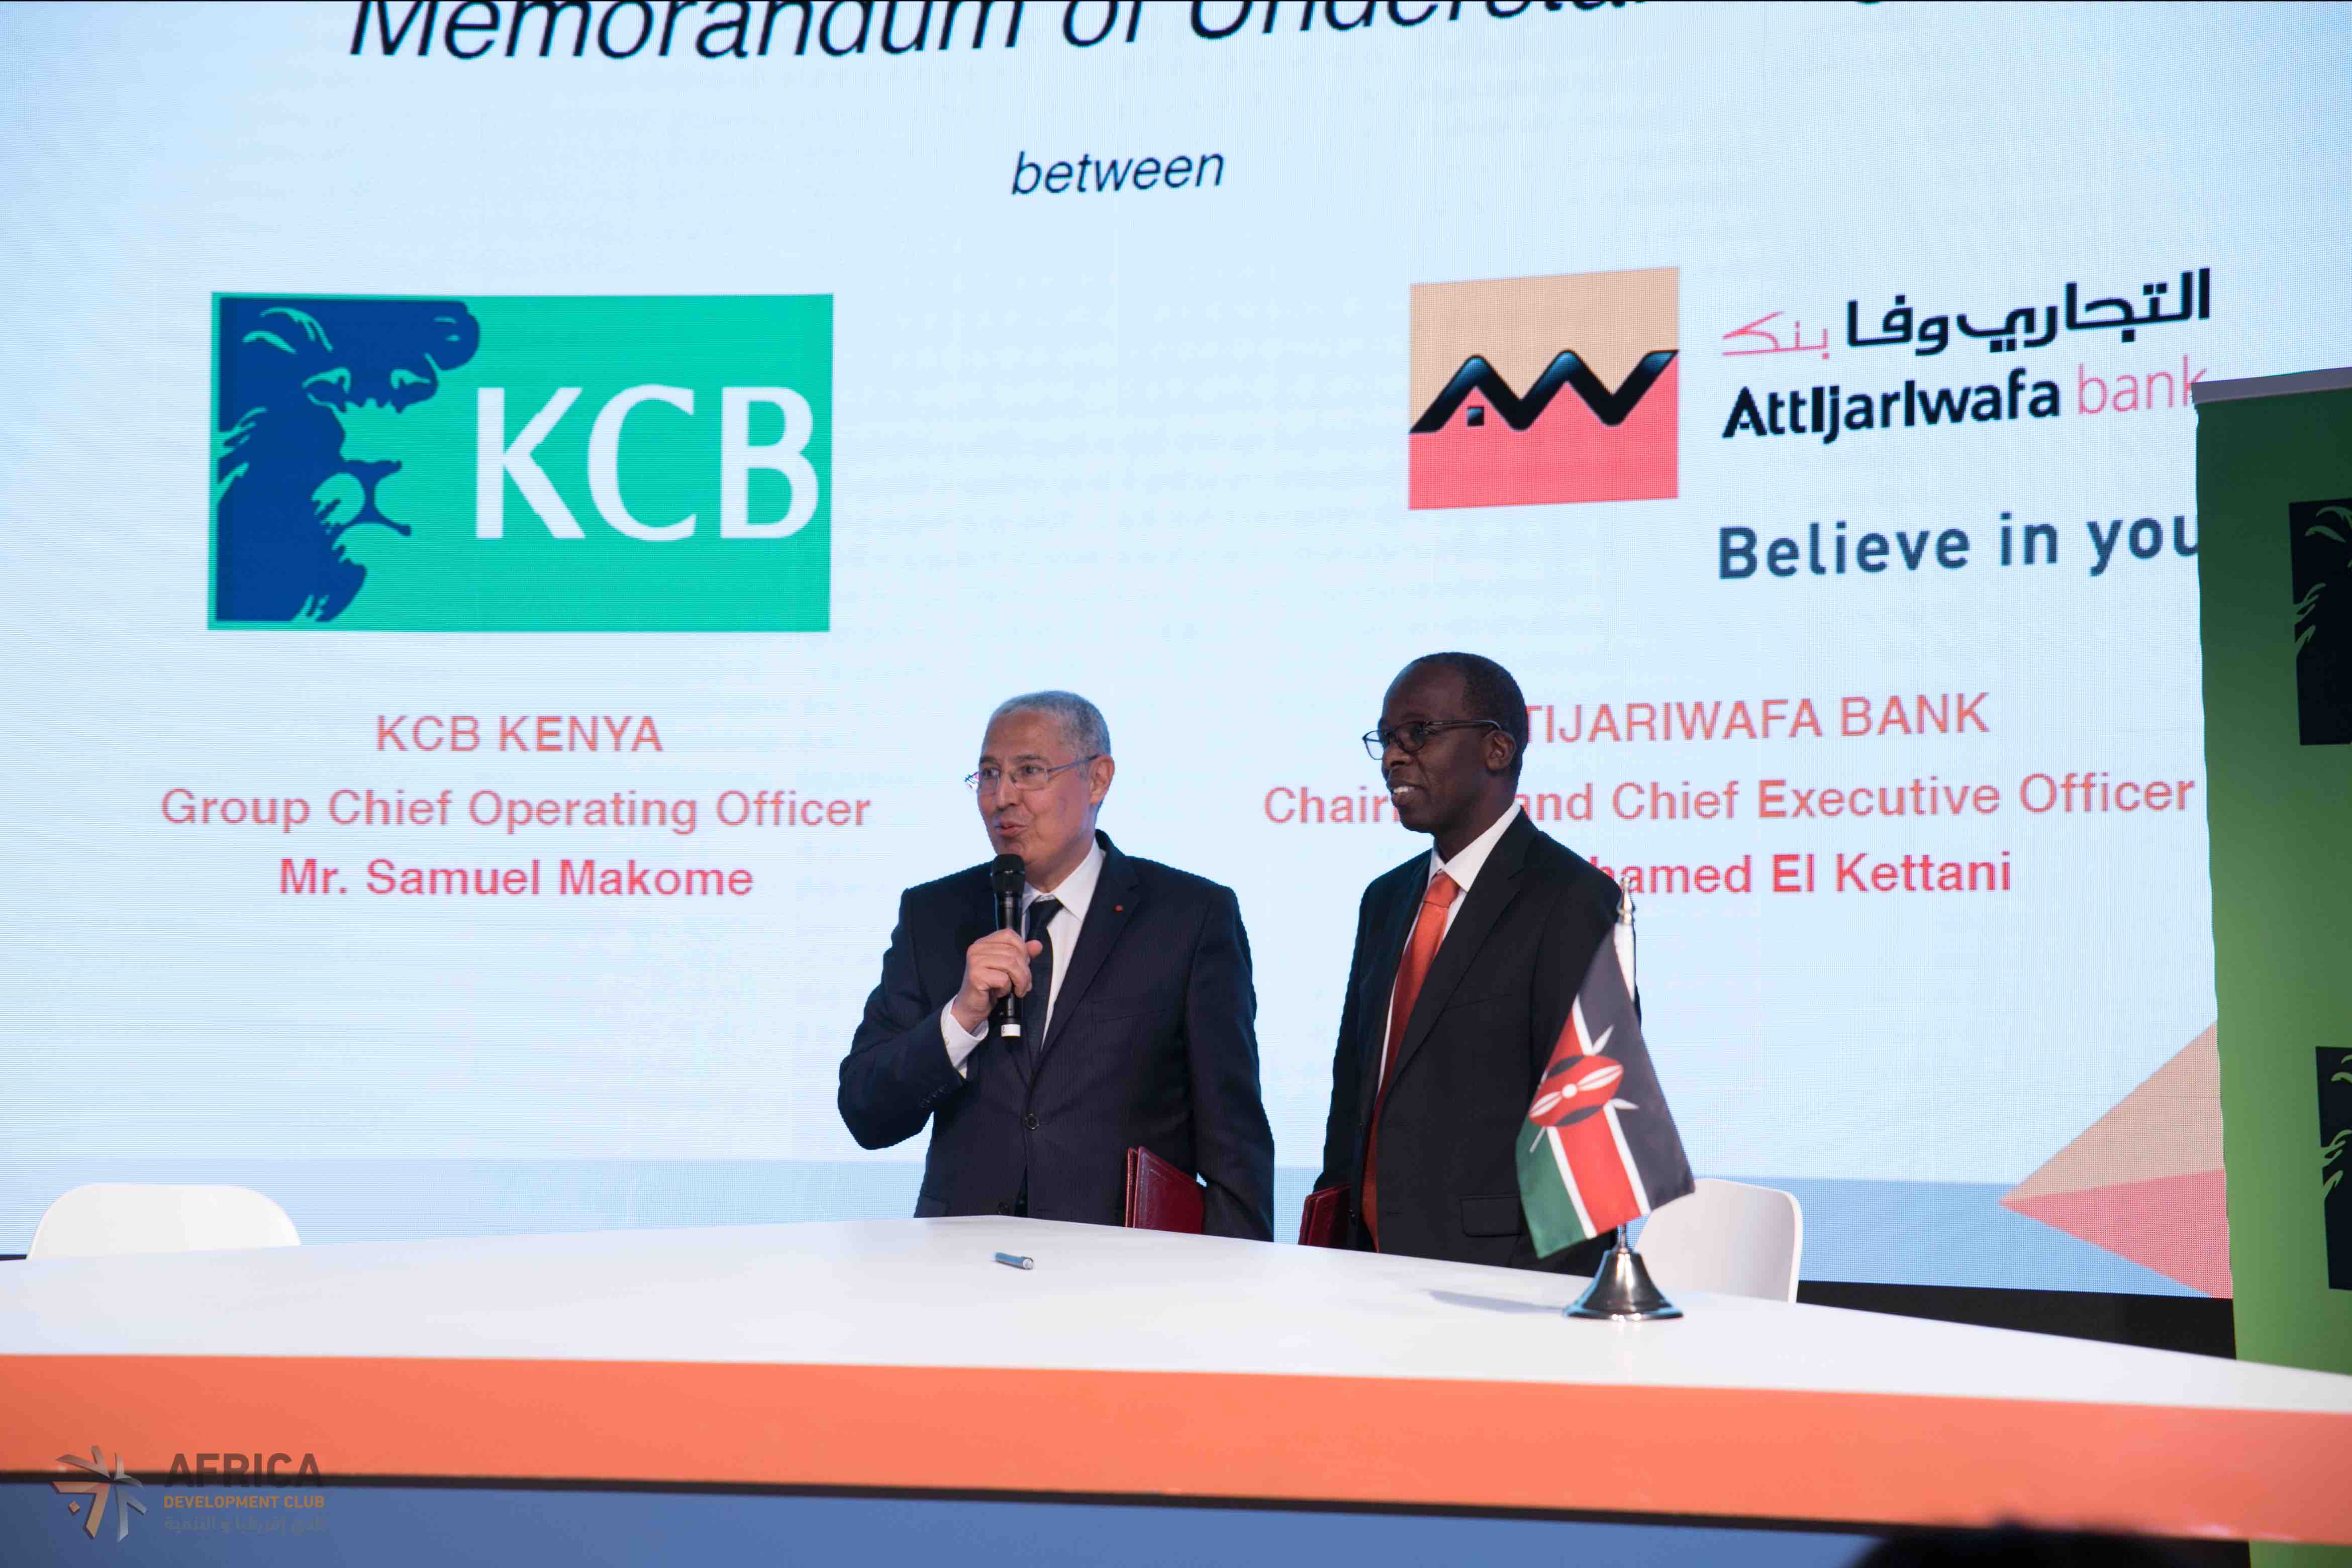 Attijariwafa bank s’ouvre un accès au marché kenyan